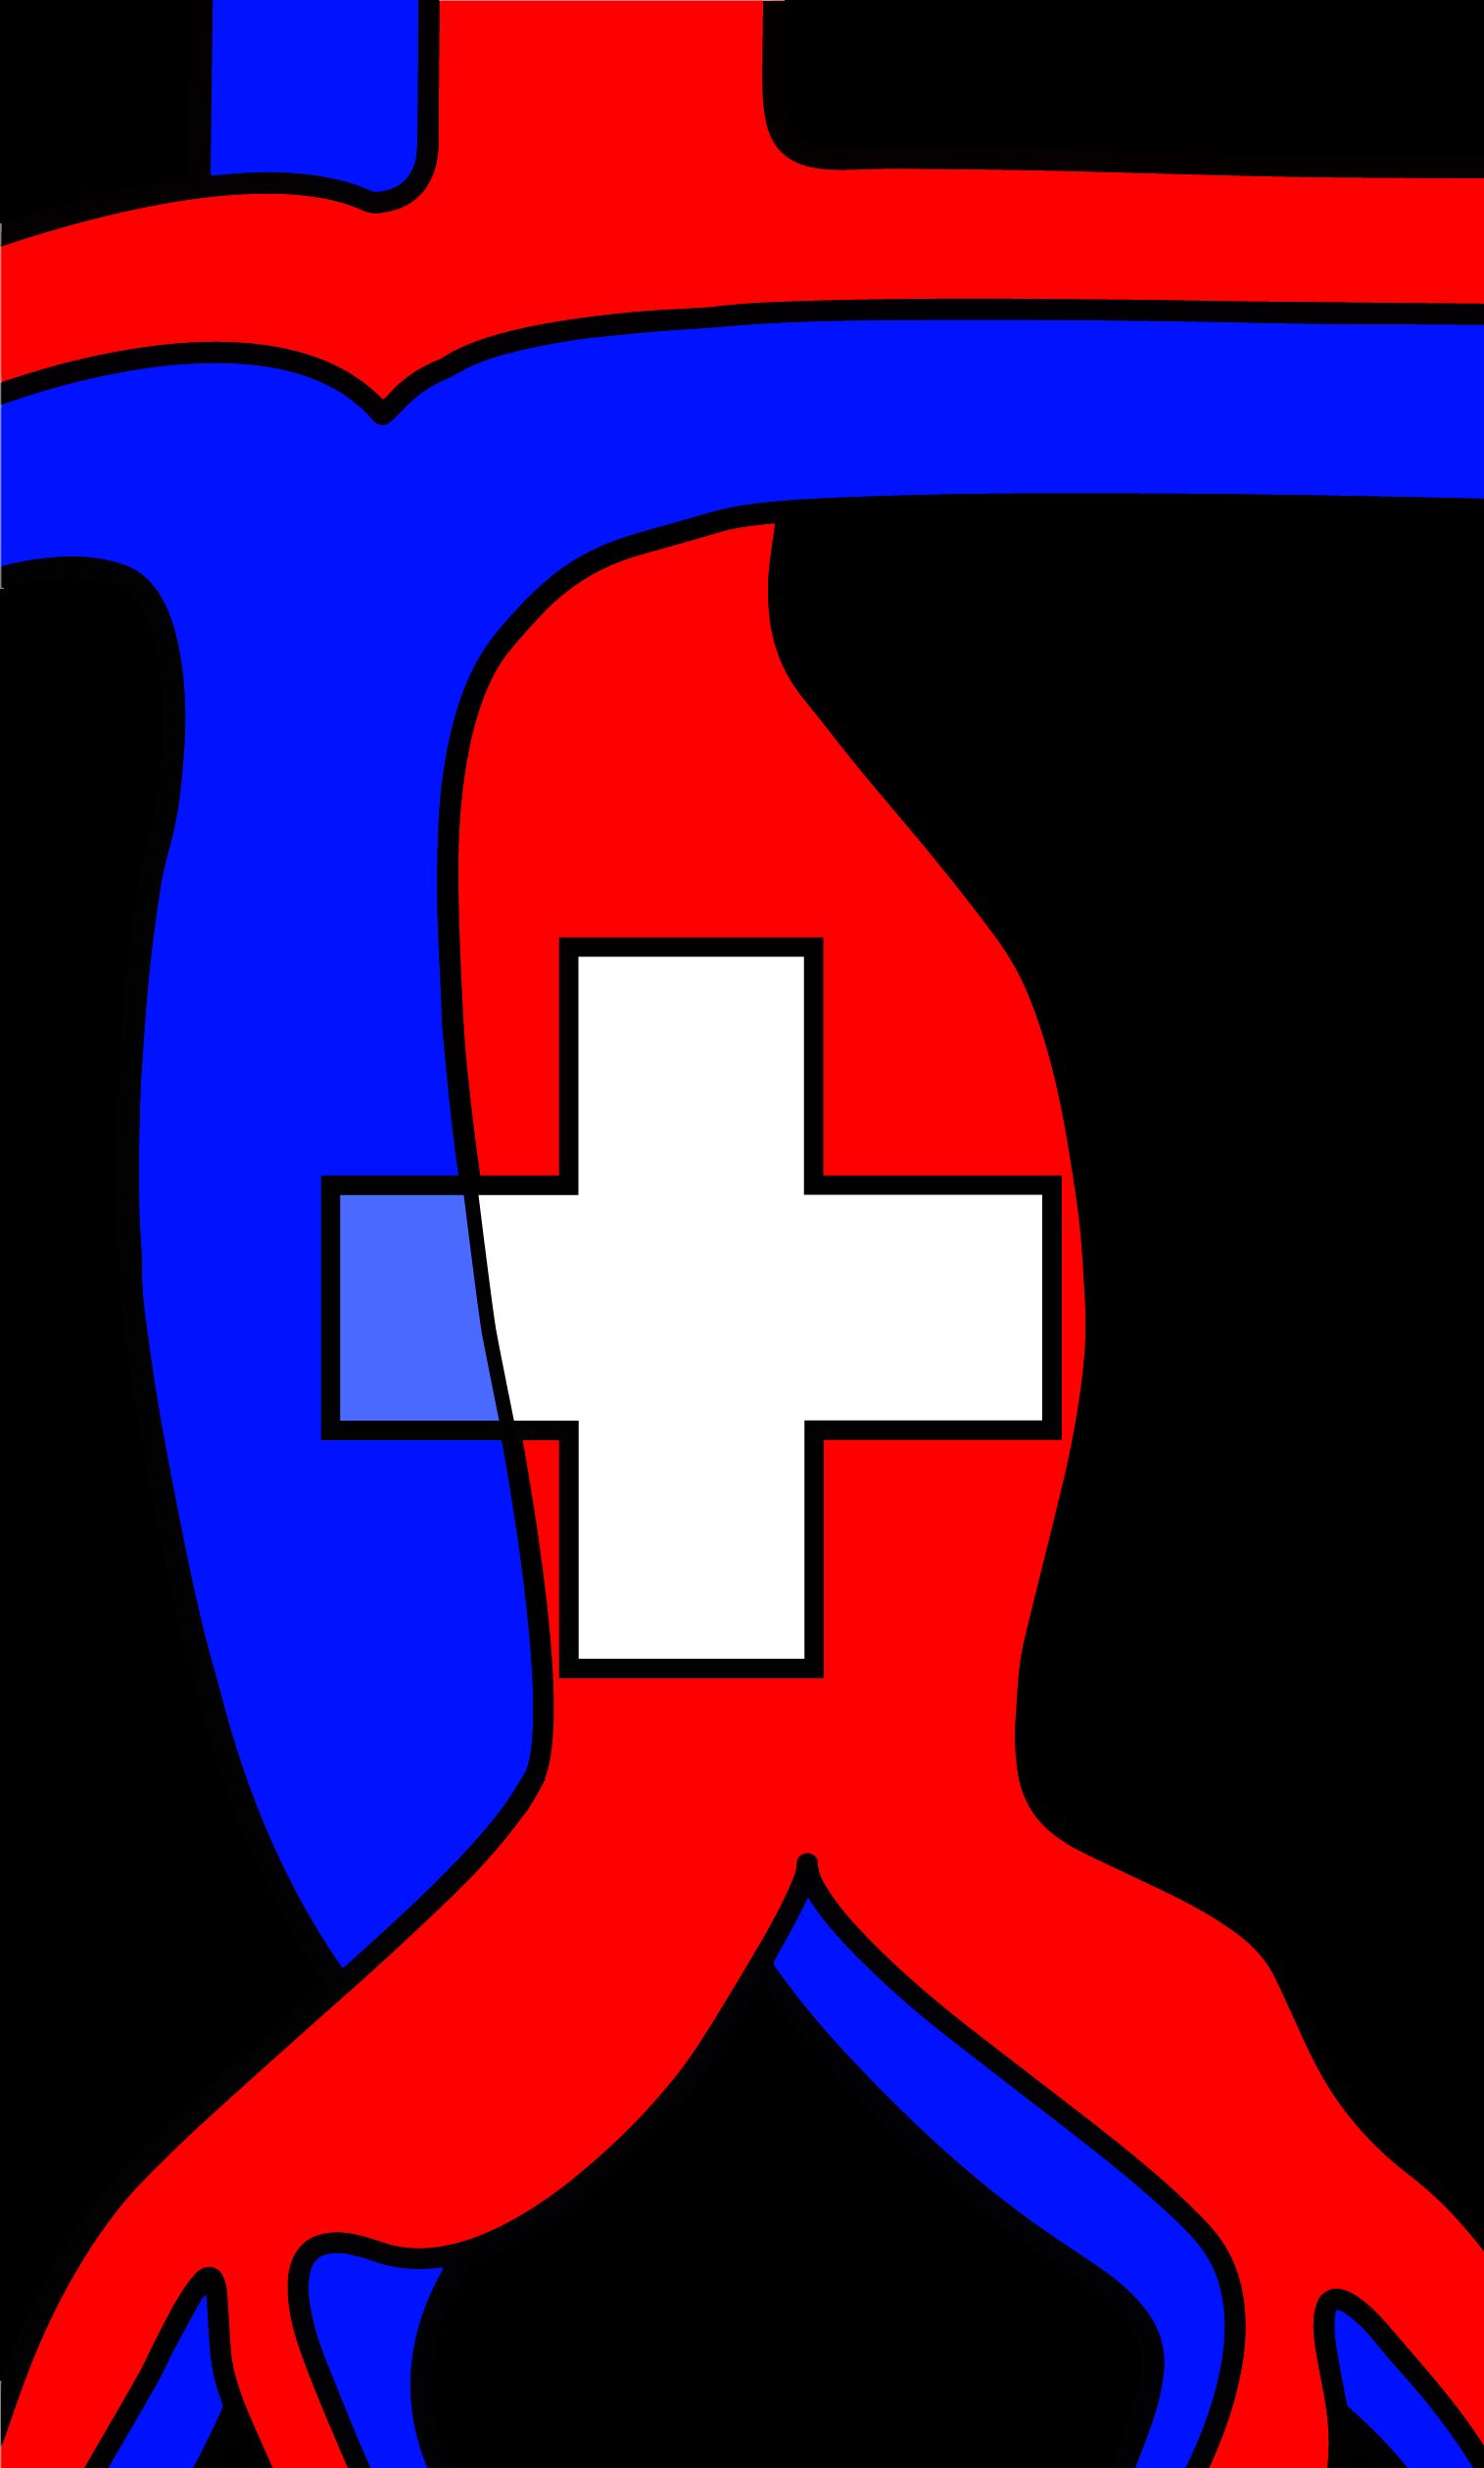 Logo sgg meister concept